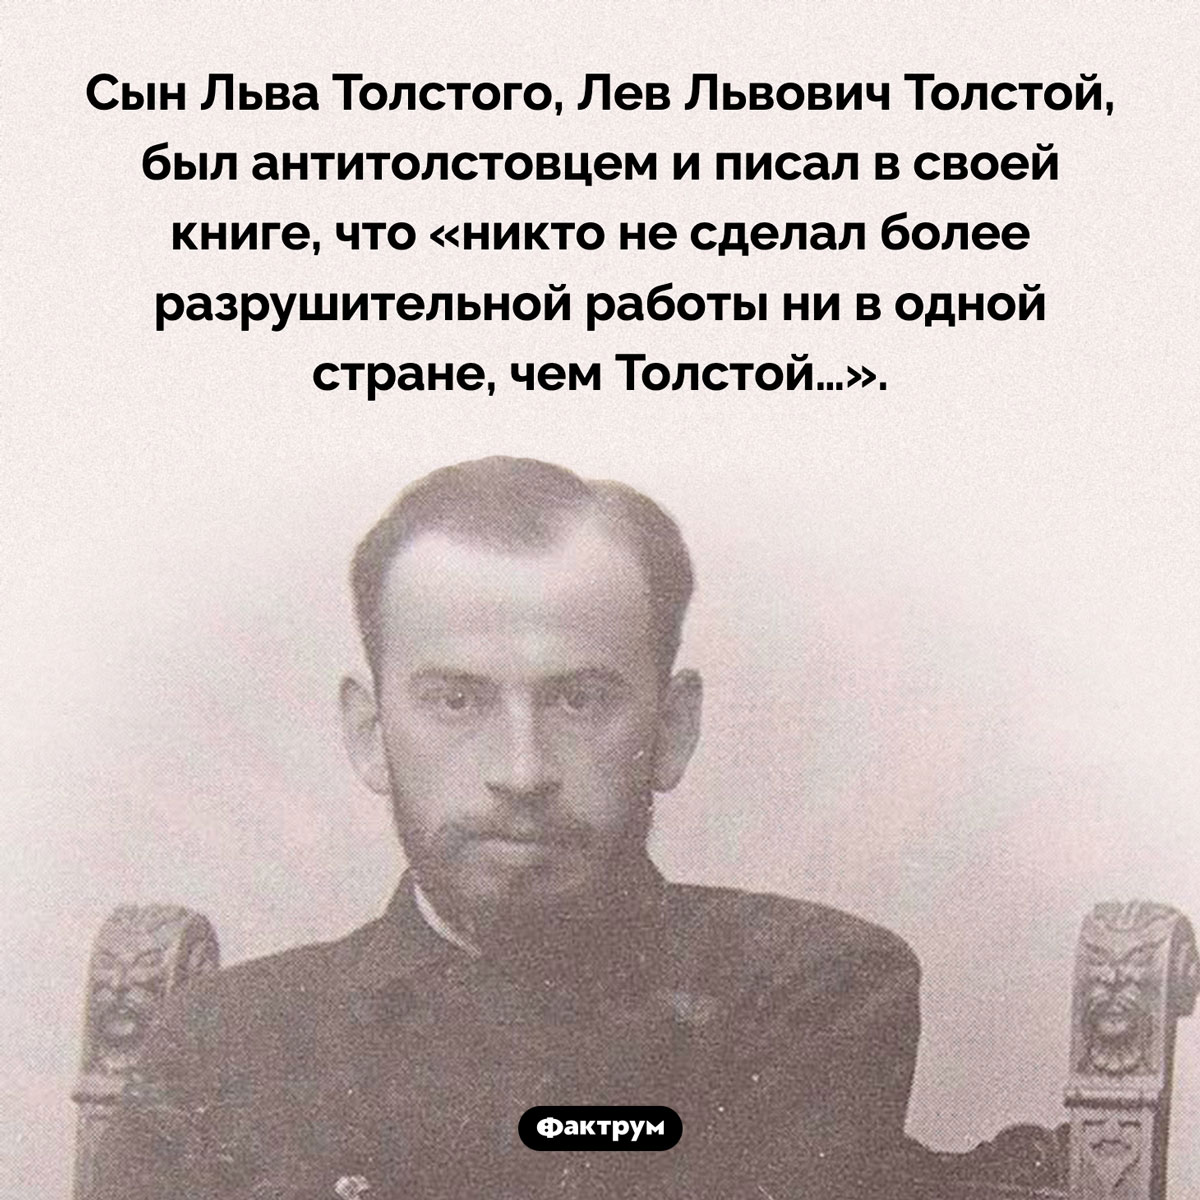 Сын Льва Толстого был антитолстовцем. Сын Льва Толстого, Лев Львович Толстой, был антитолстовцем и писал в своей книге, что «никто не сделал более разрушительной работы ни в одной стране, чем Толстой…».